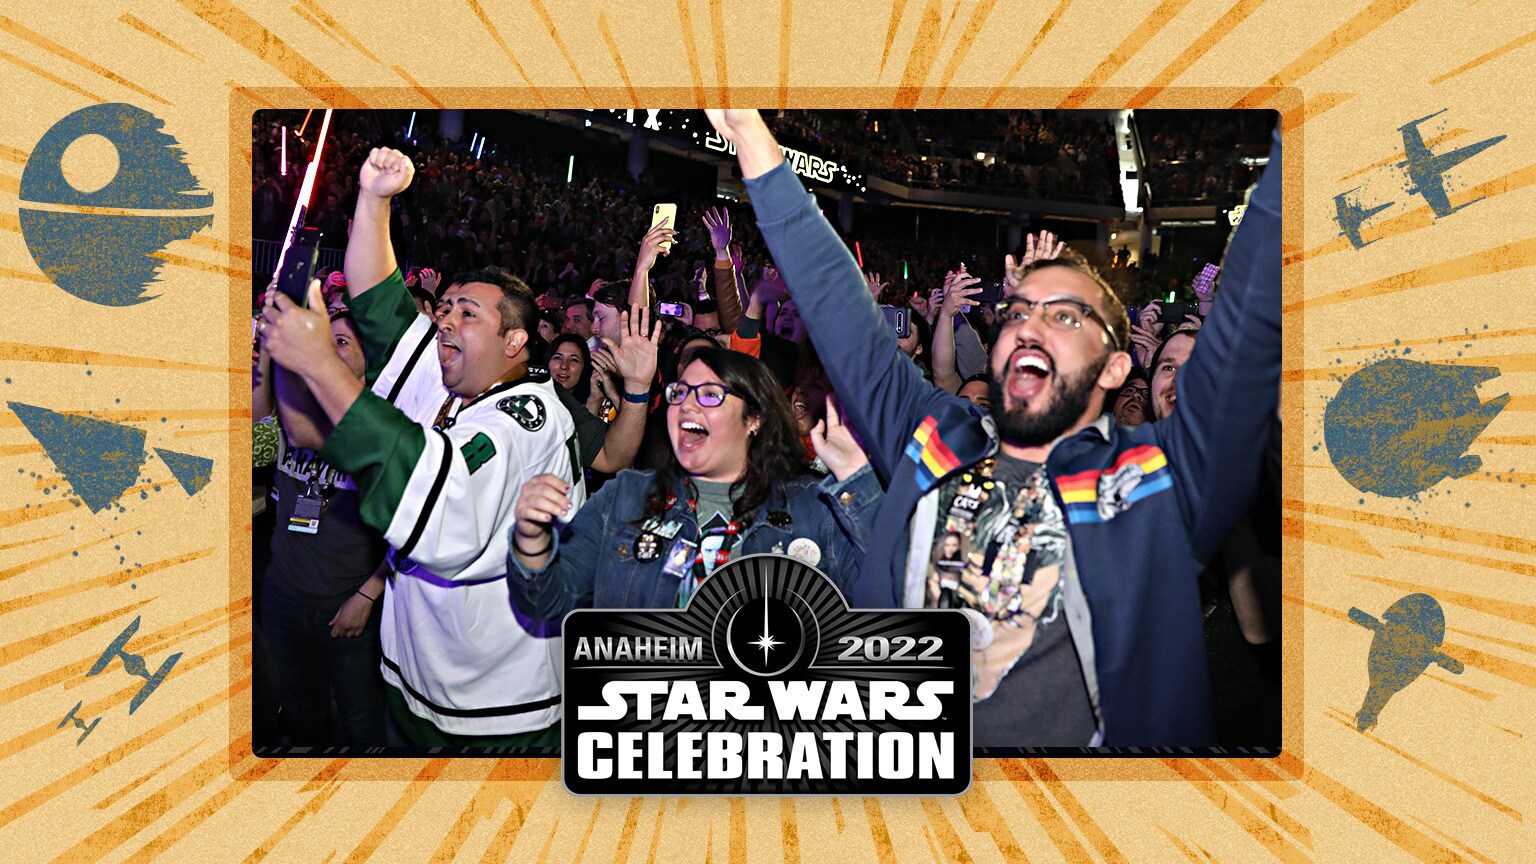 Star Wars Celebration Anaheim 2022 Panel Reservation Details